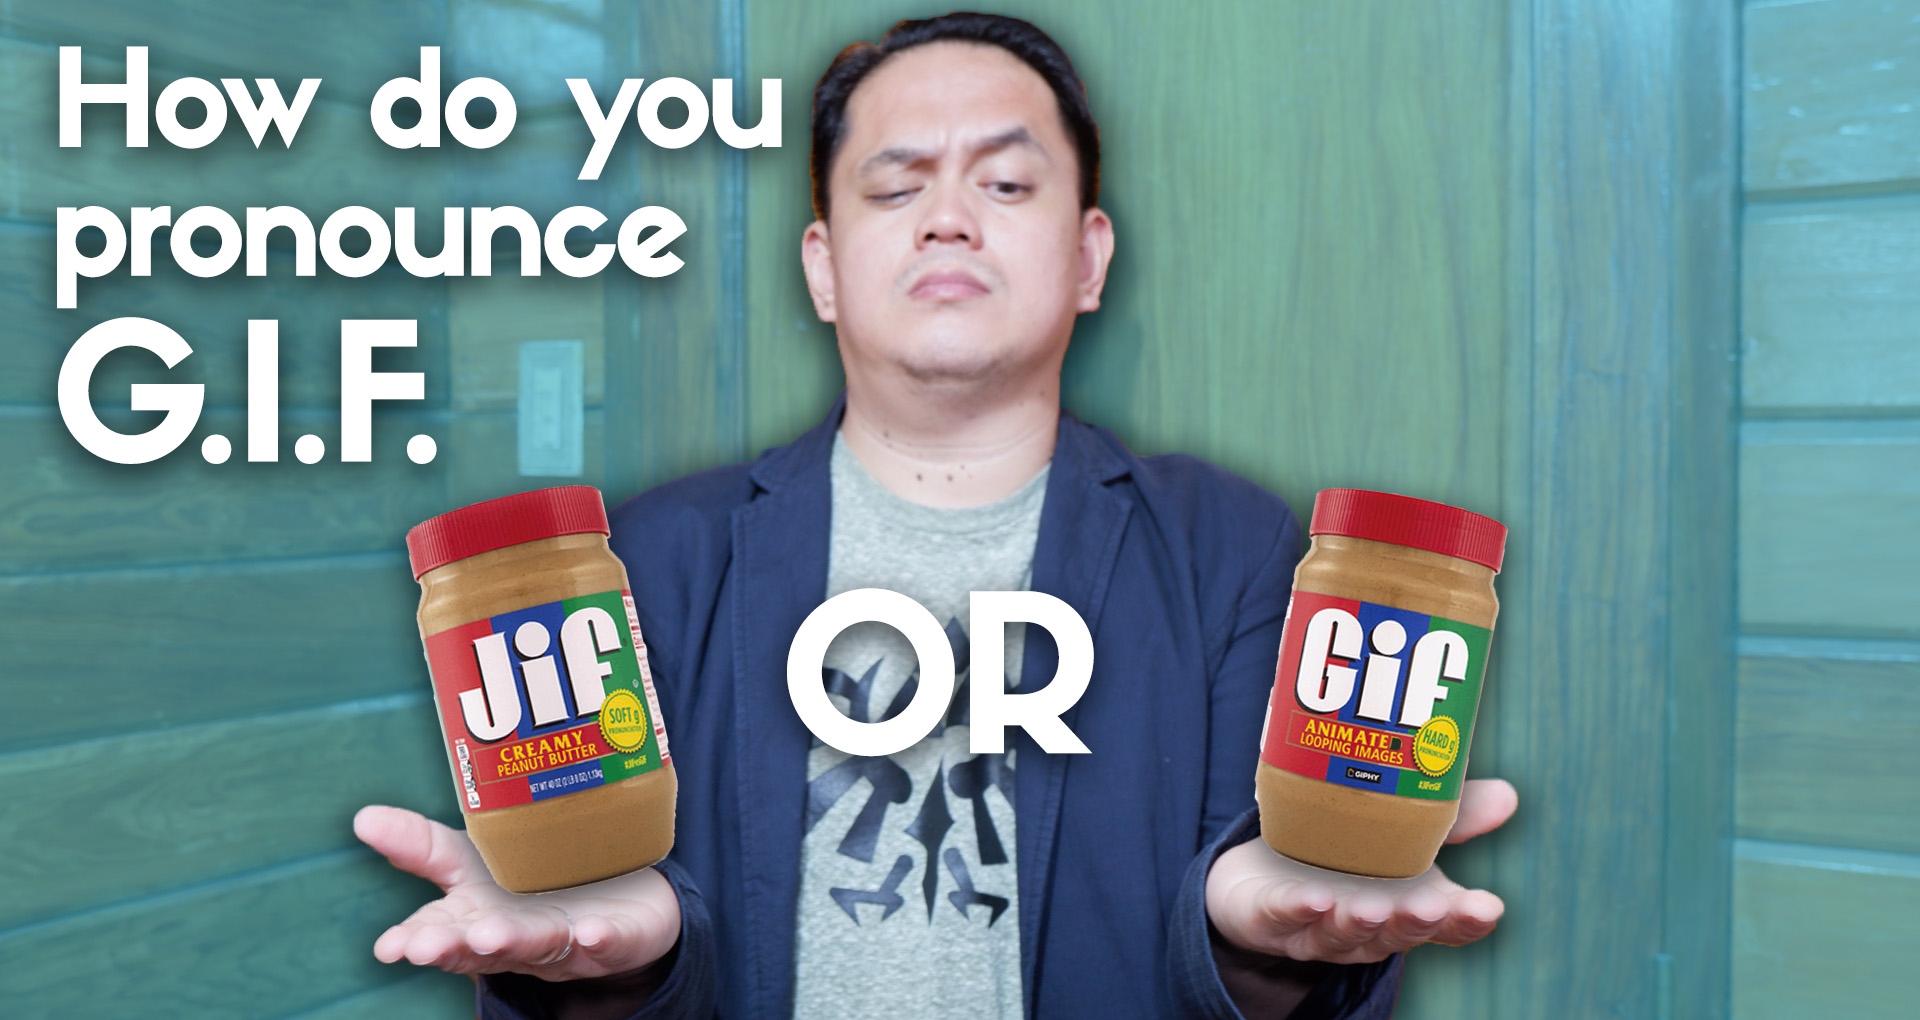 How Do You Pronounce GIF? #JIFvsGIF